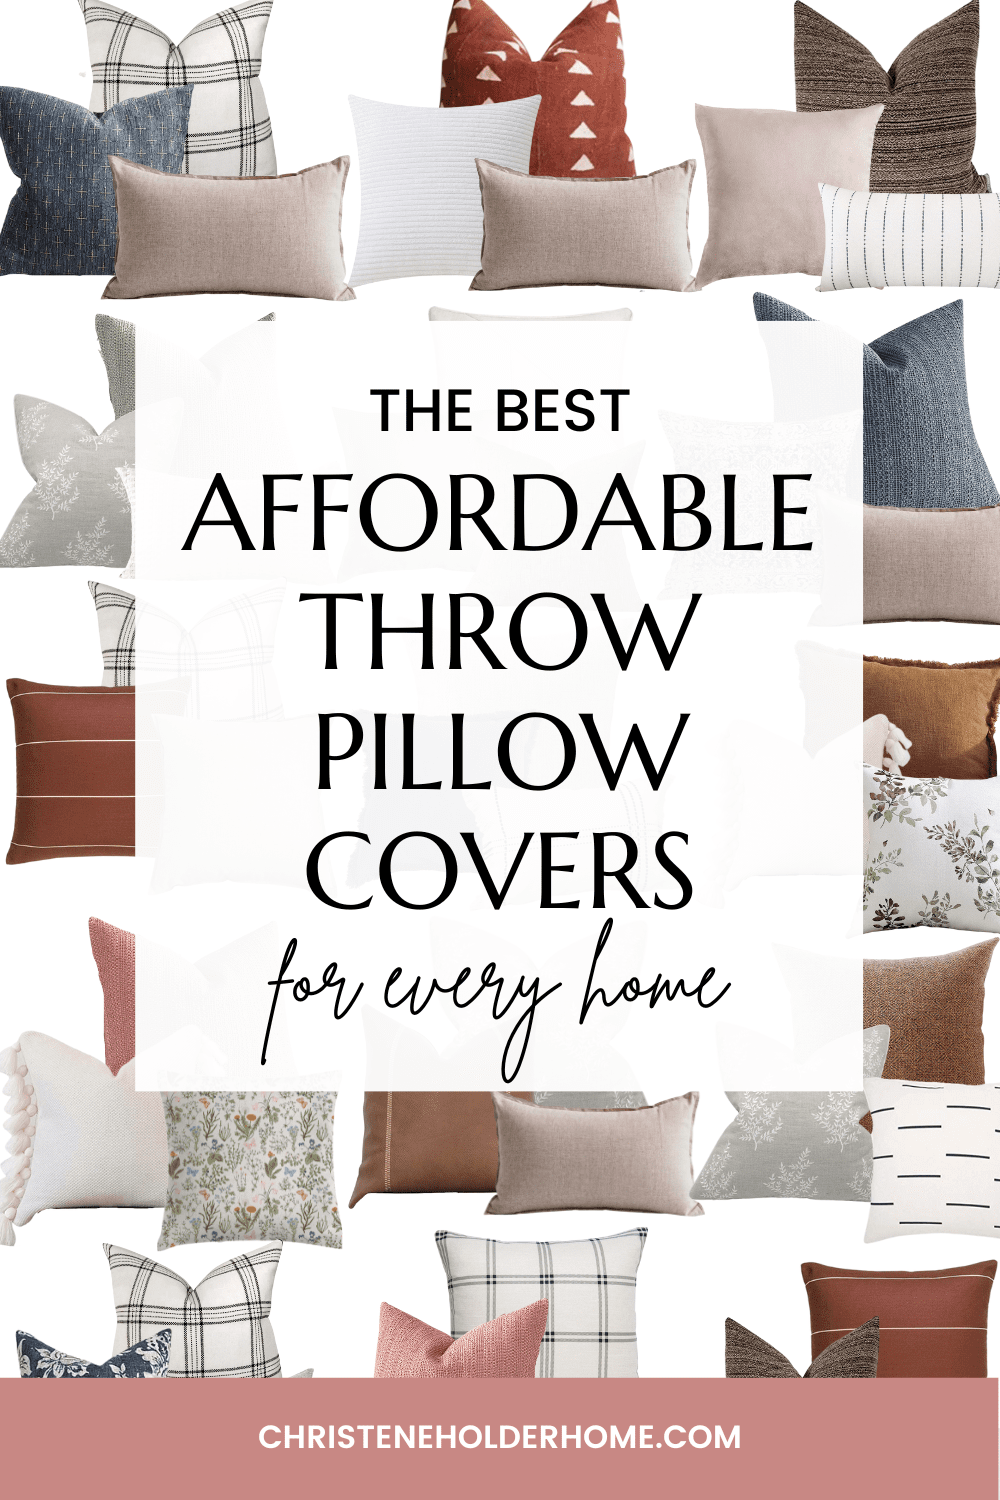 8 No-Fail Throw Pillow Ideas